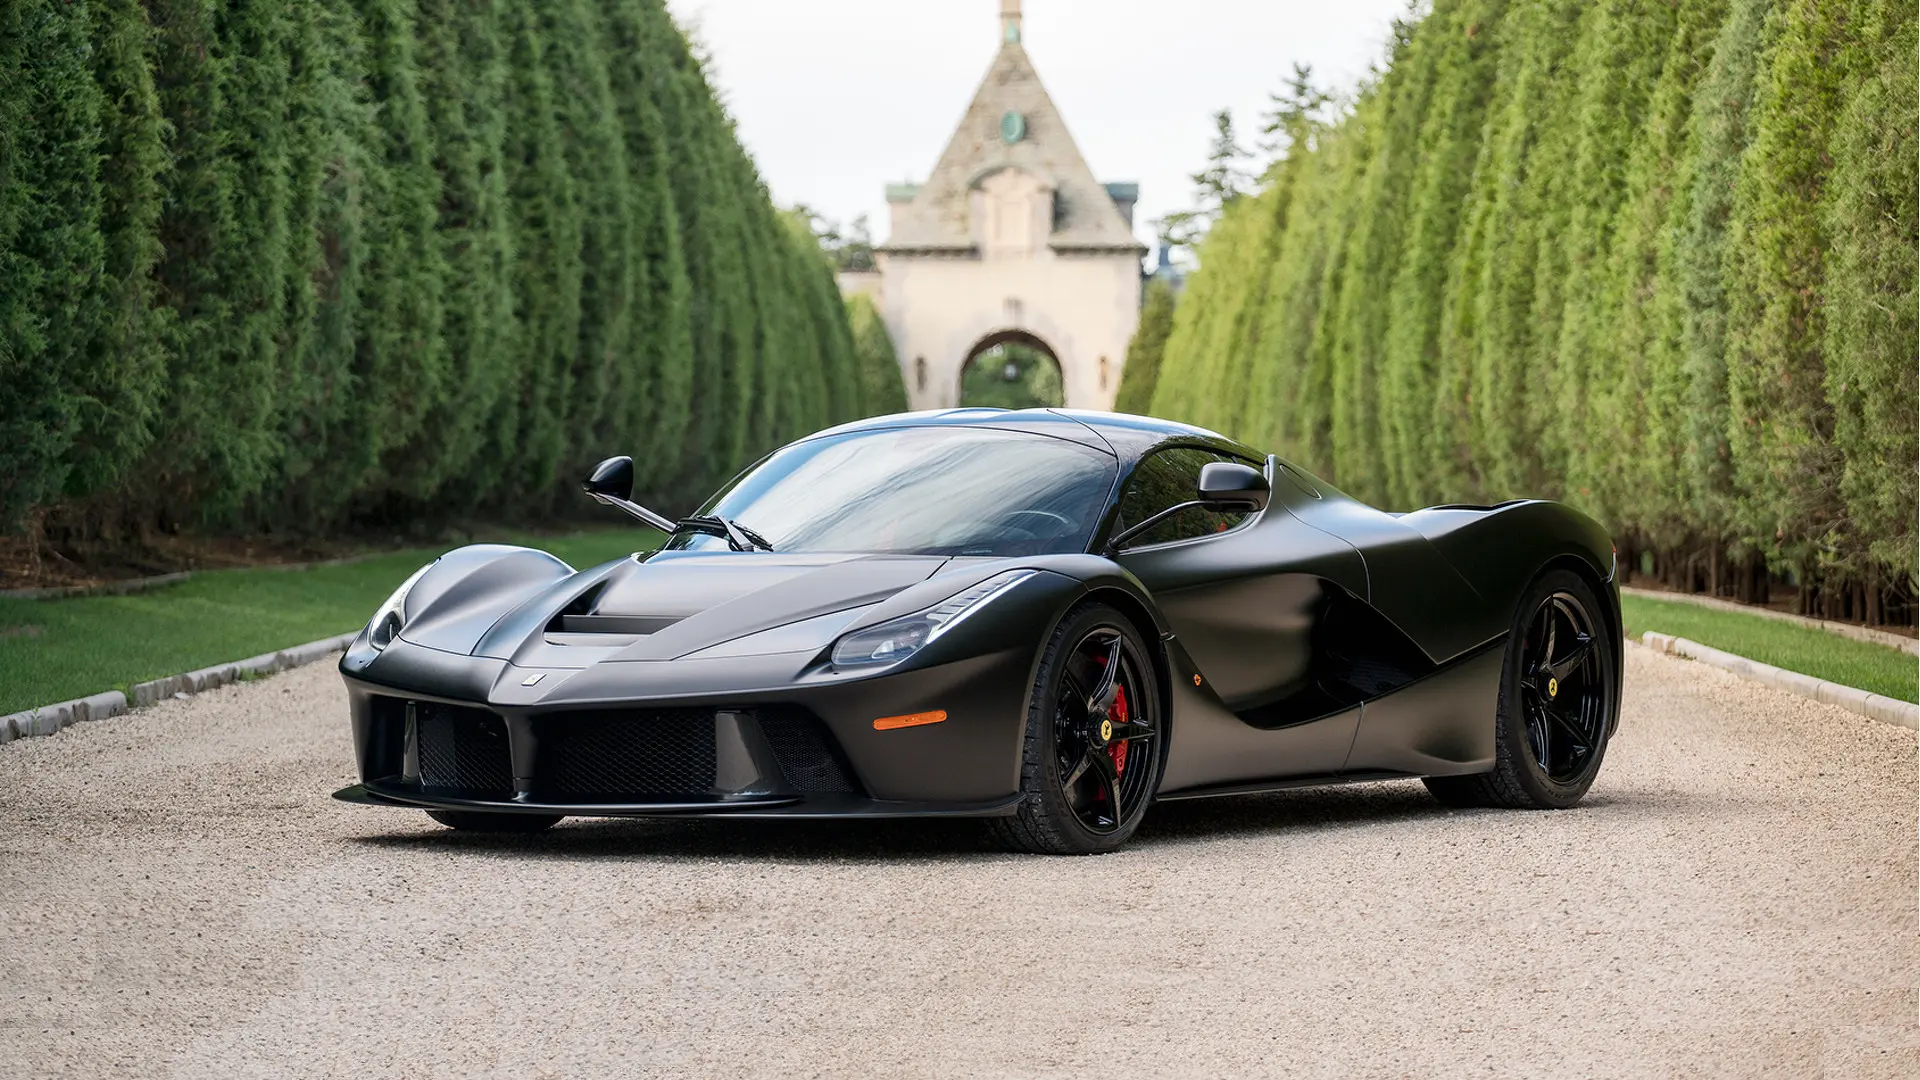 matte black ferrari price - What is the price of black Ferrari